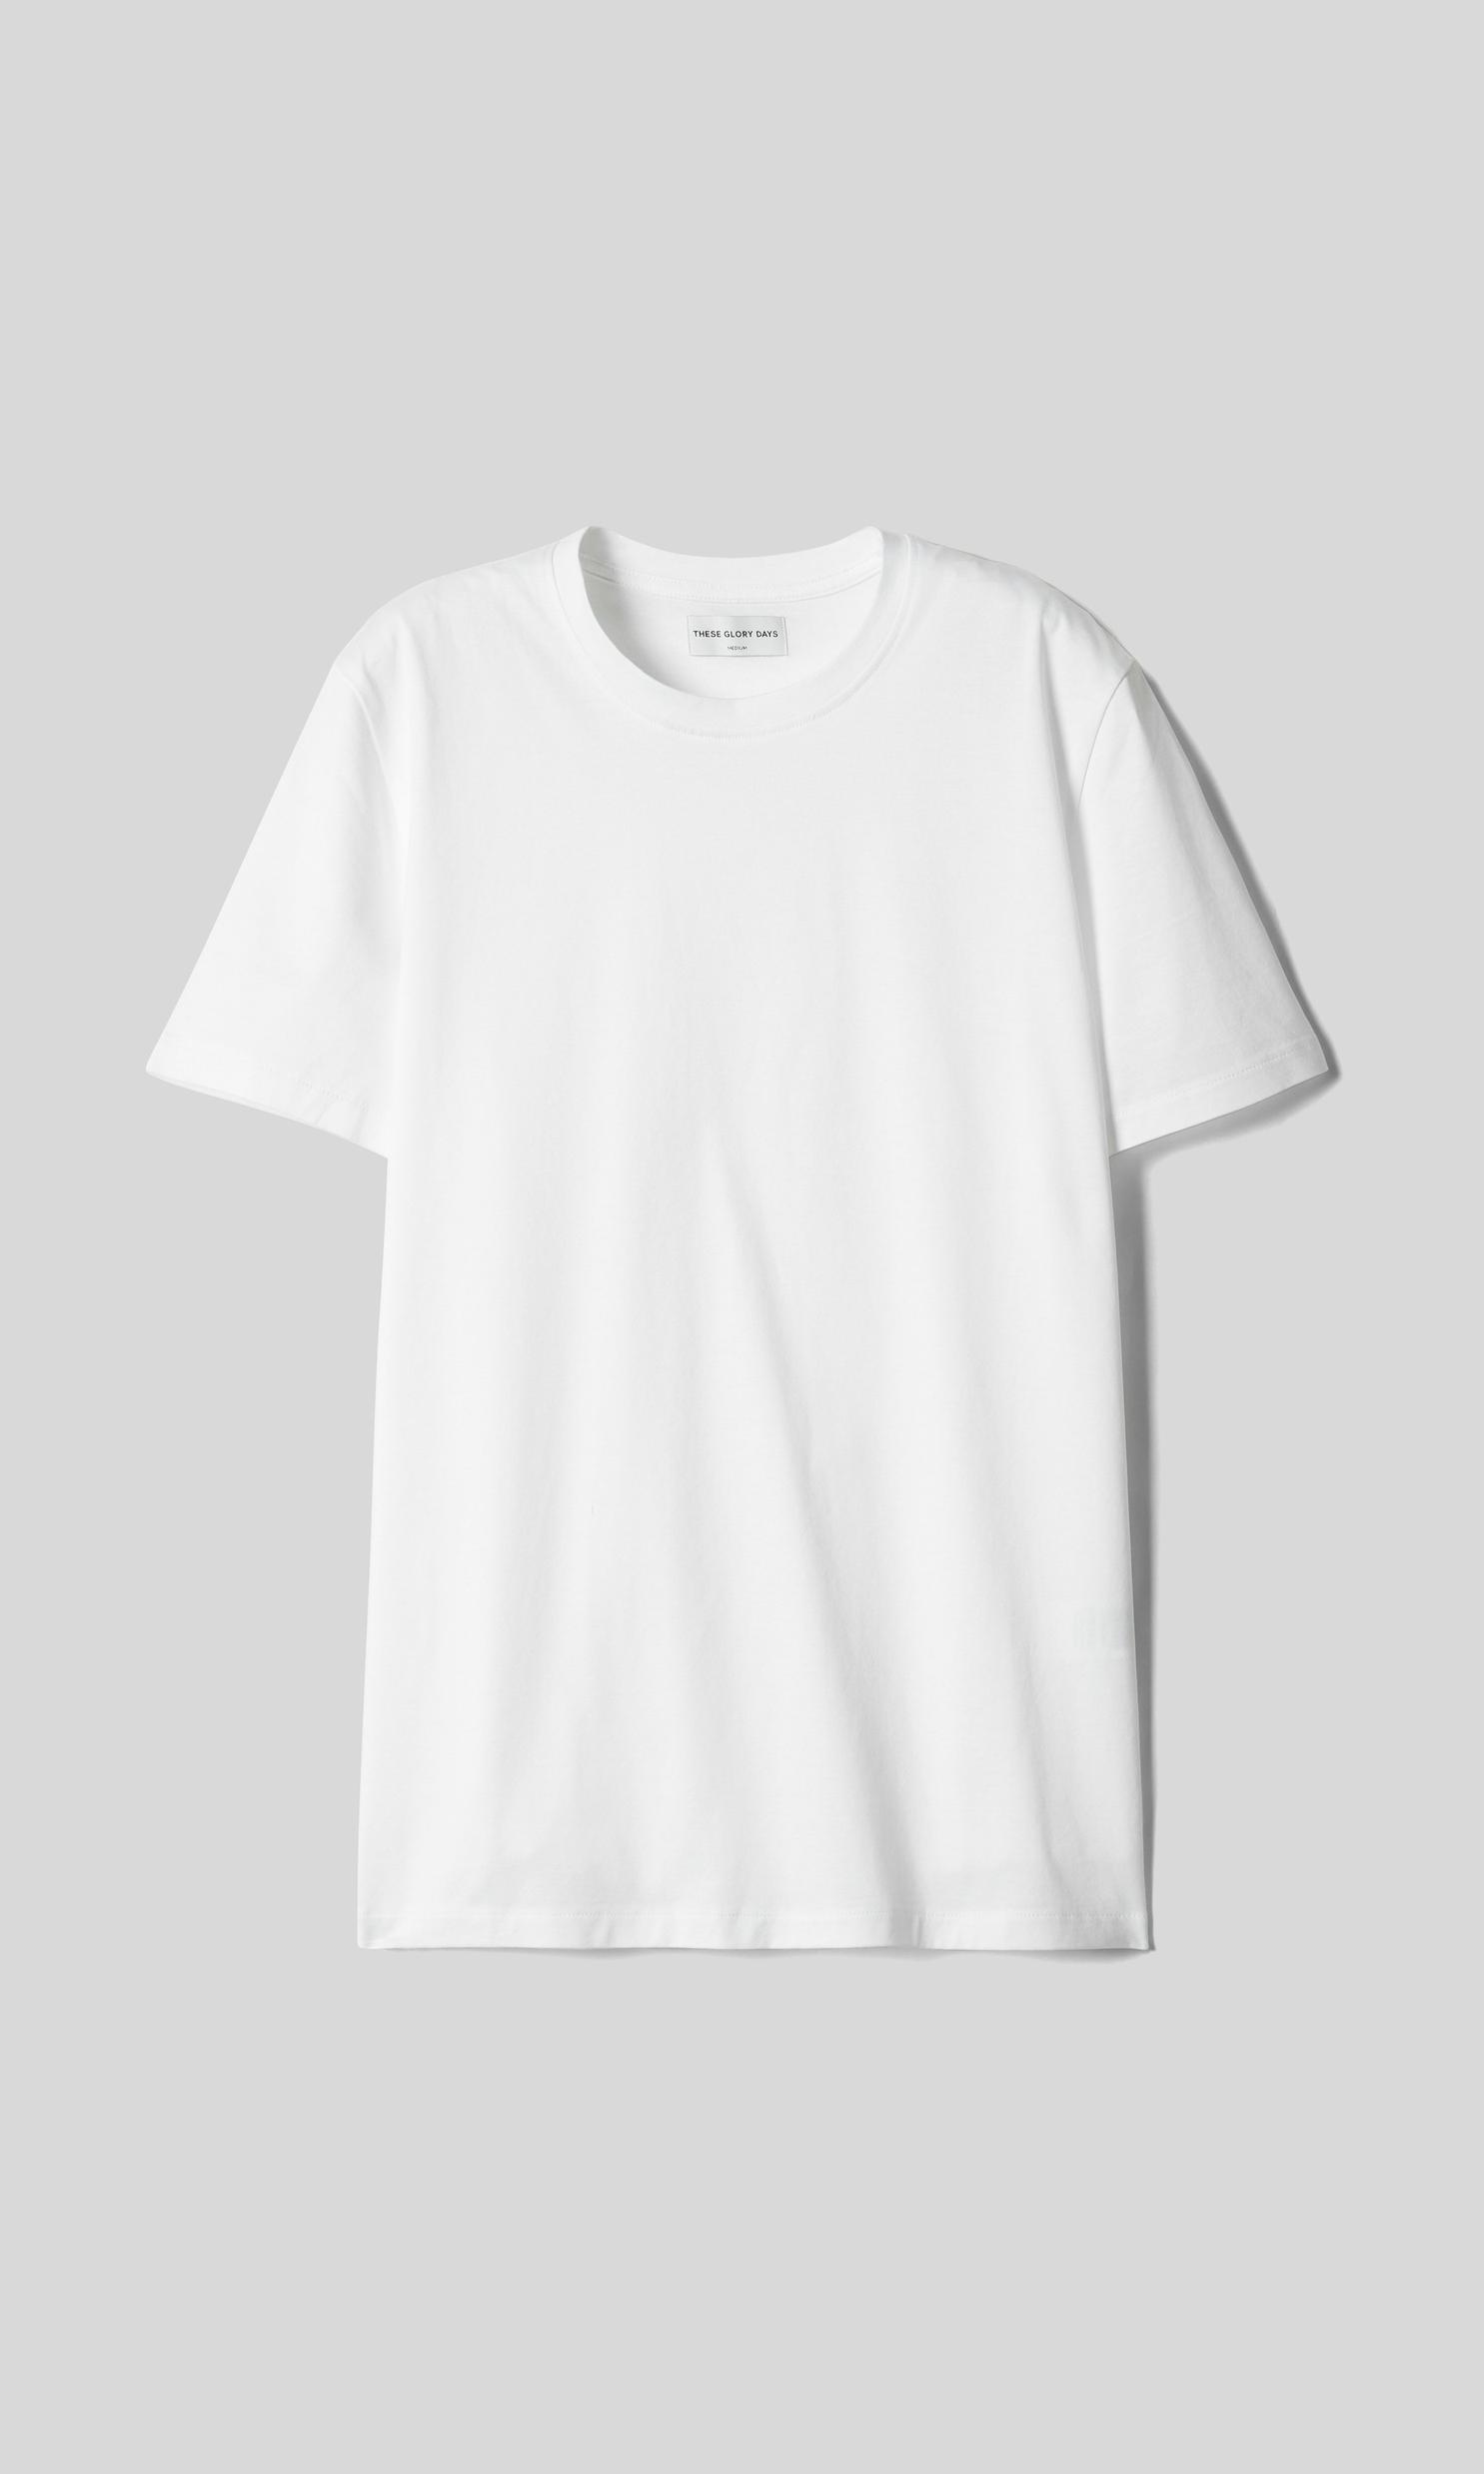 Vinto Rundhalsad T-shirt för 299 kr på Volt